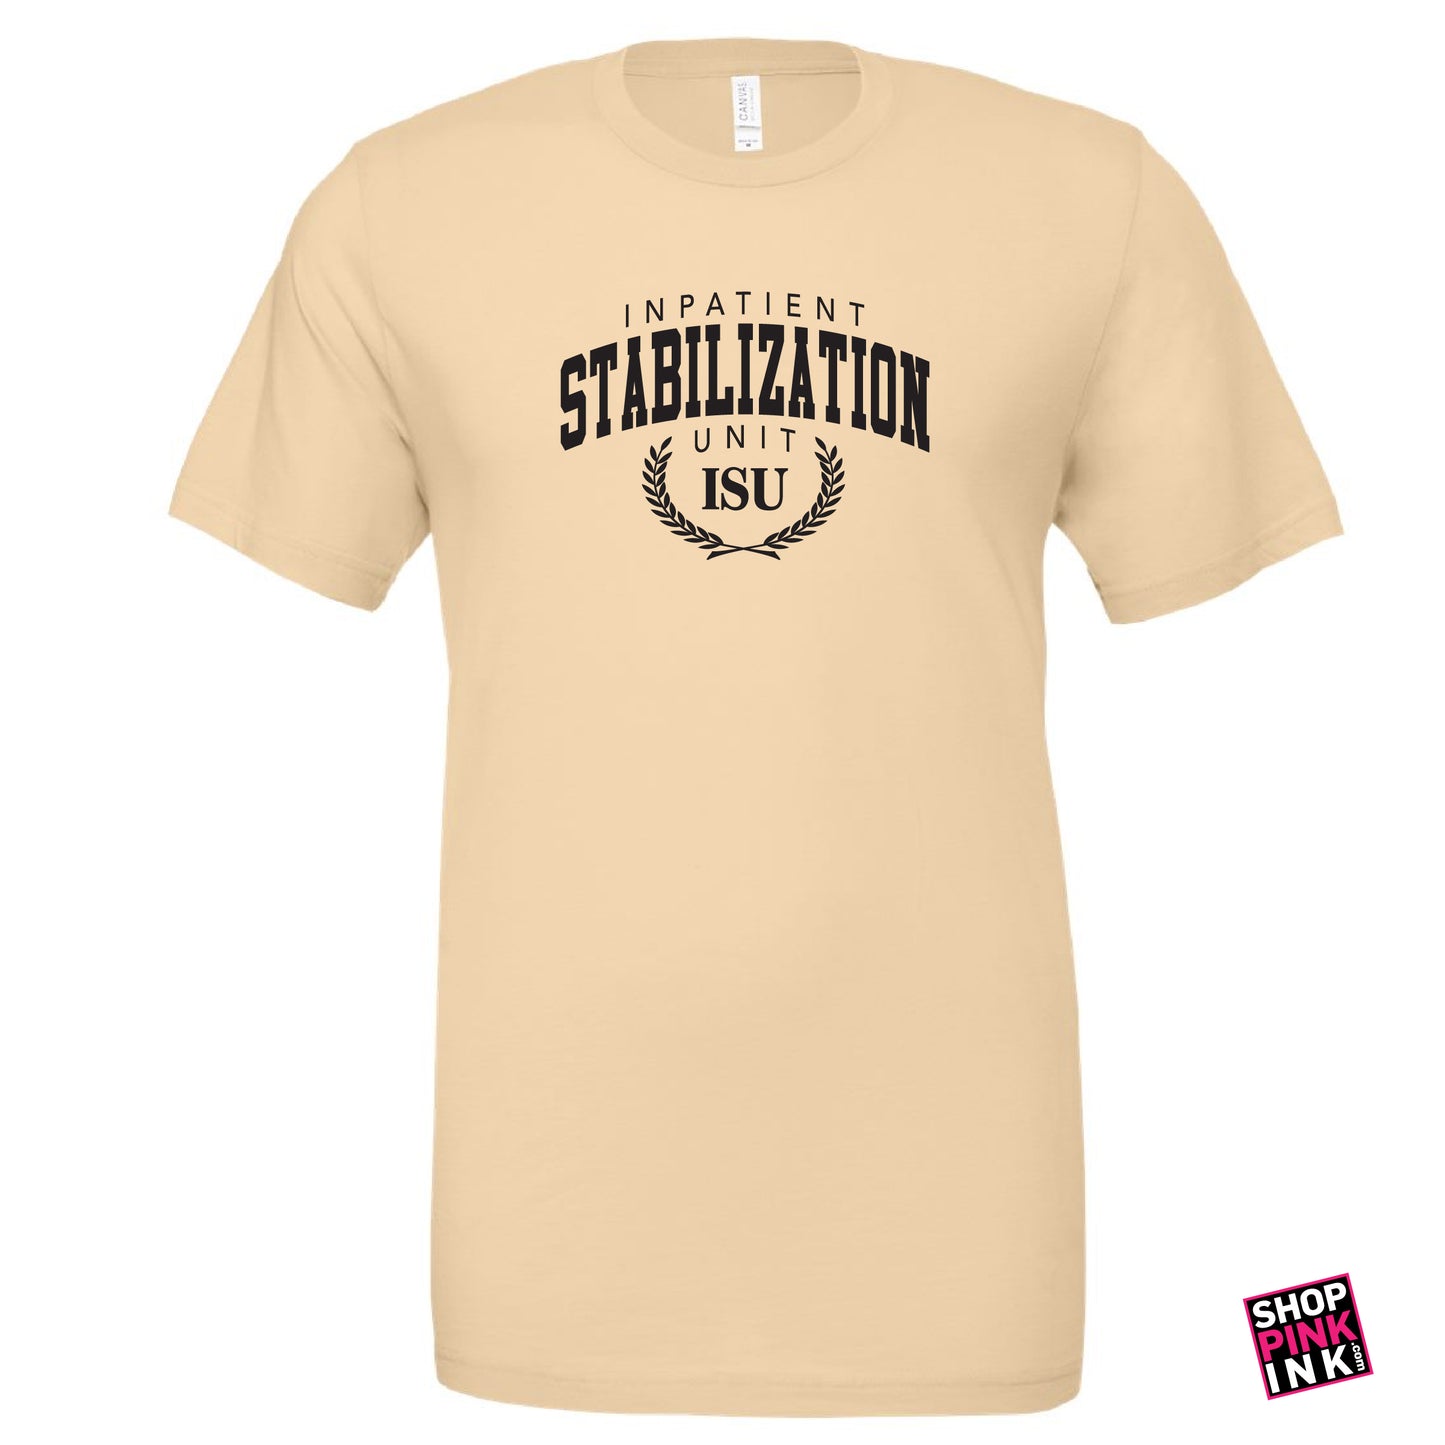 Inpatient Stabilization Unit - Short Sleeve - 22923